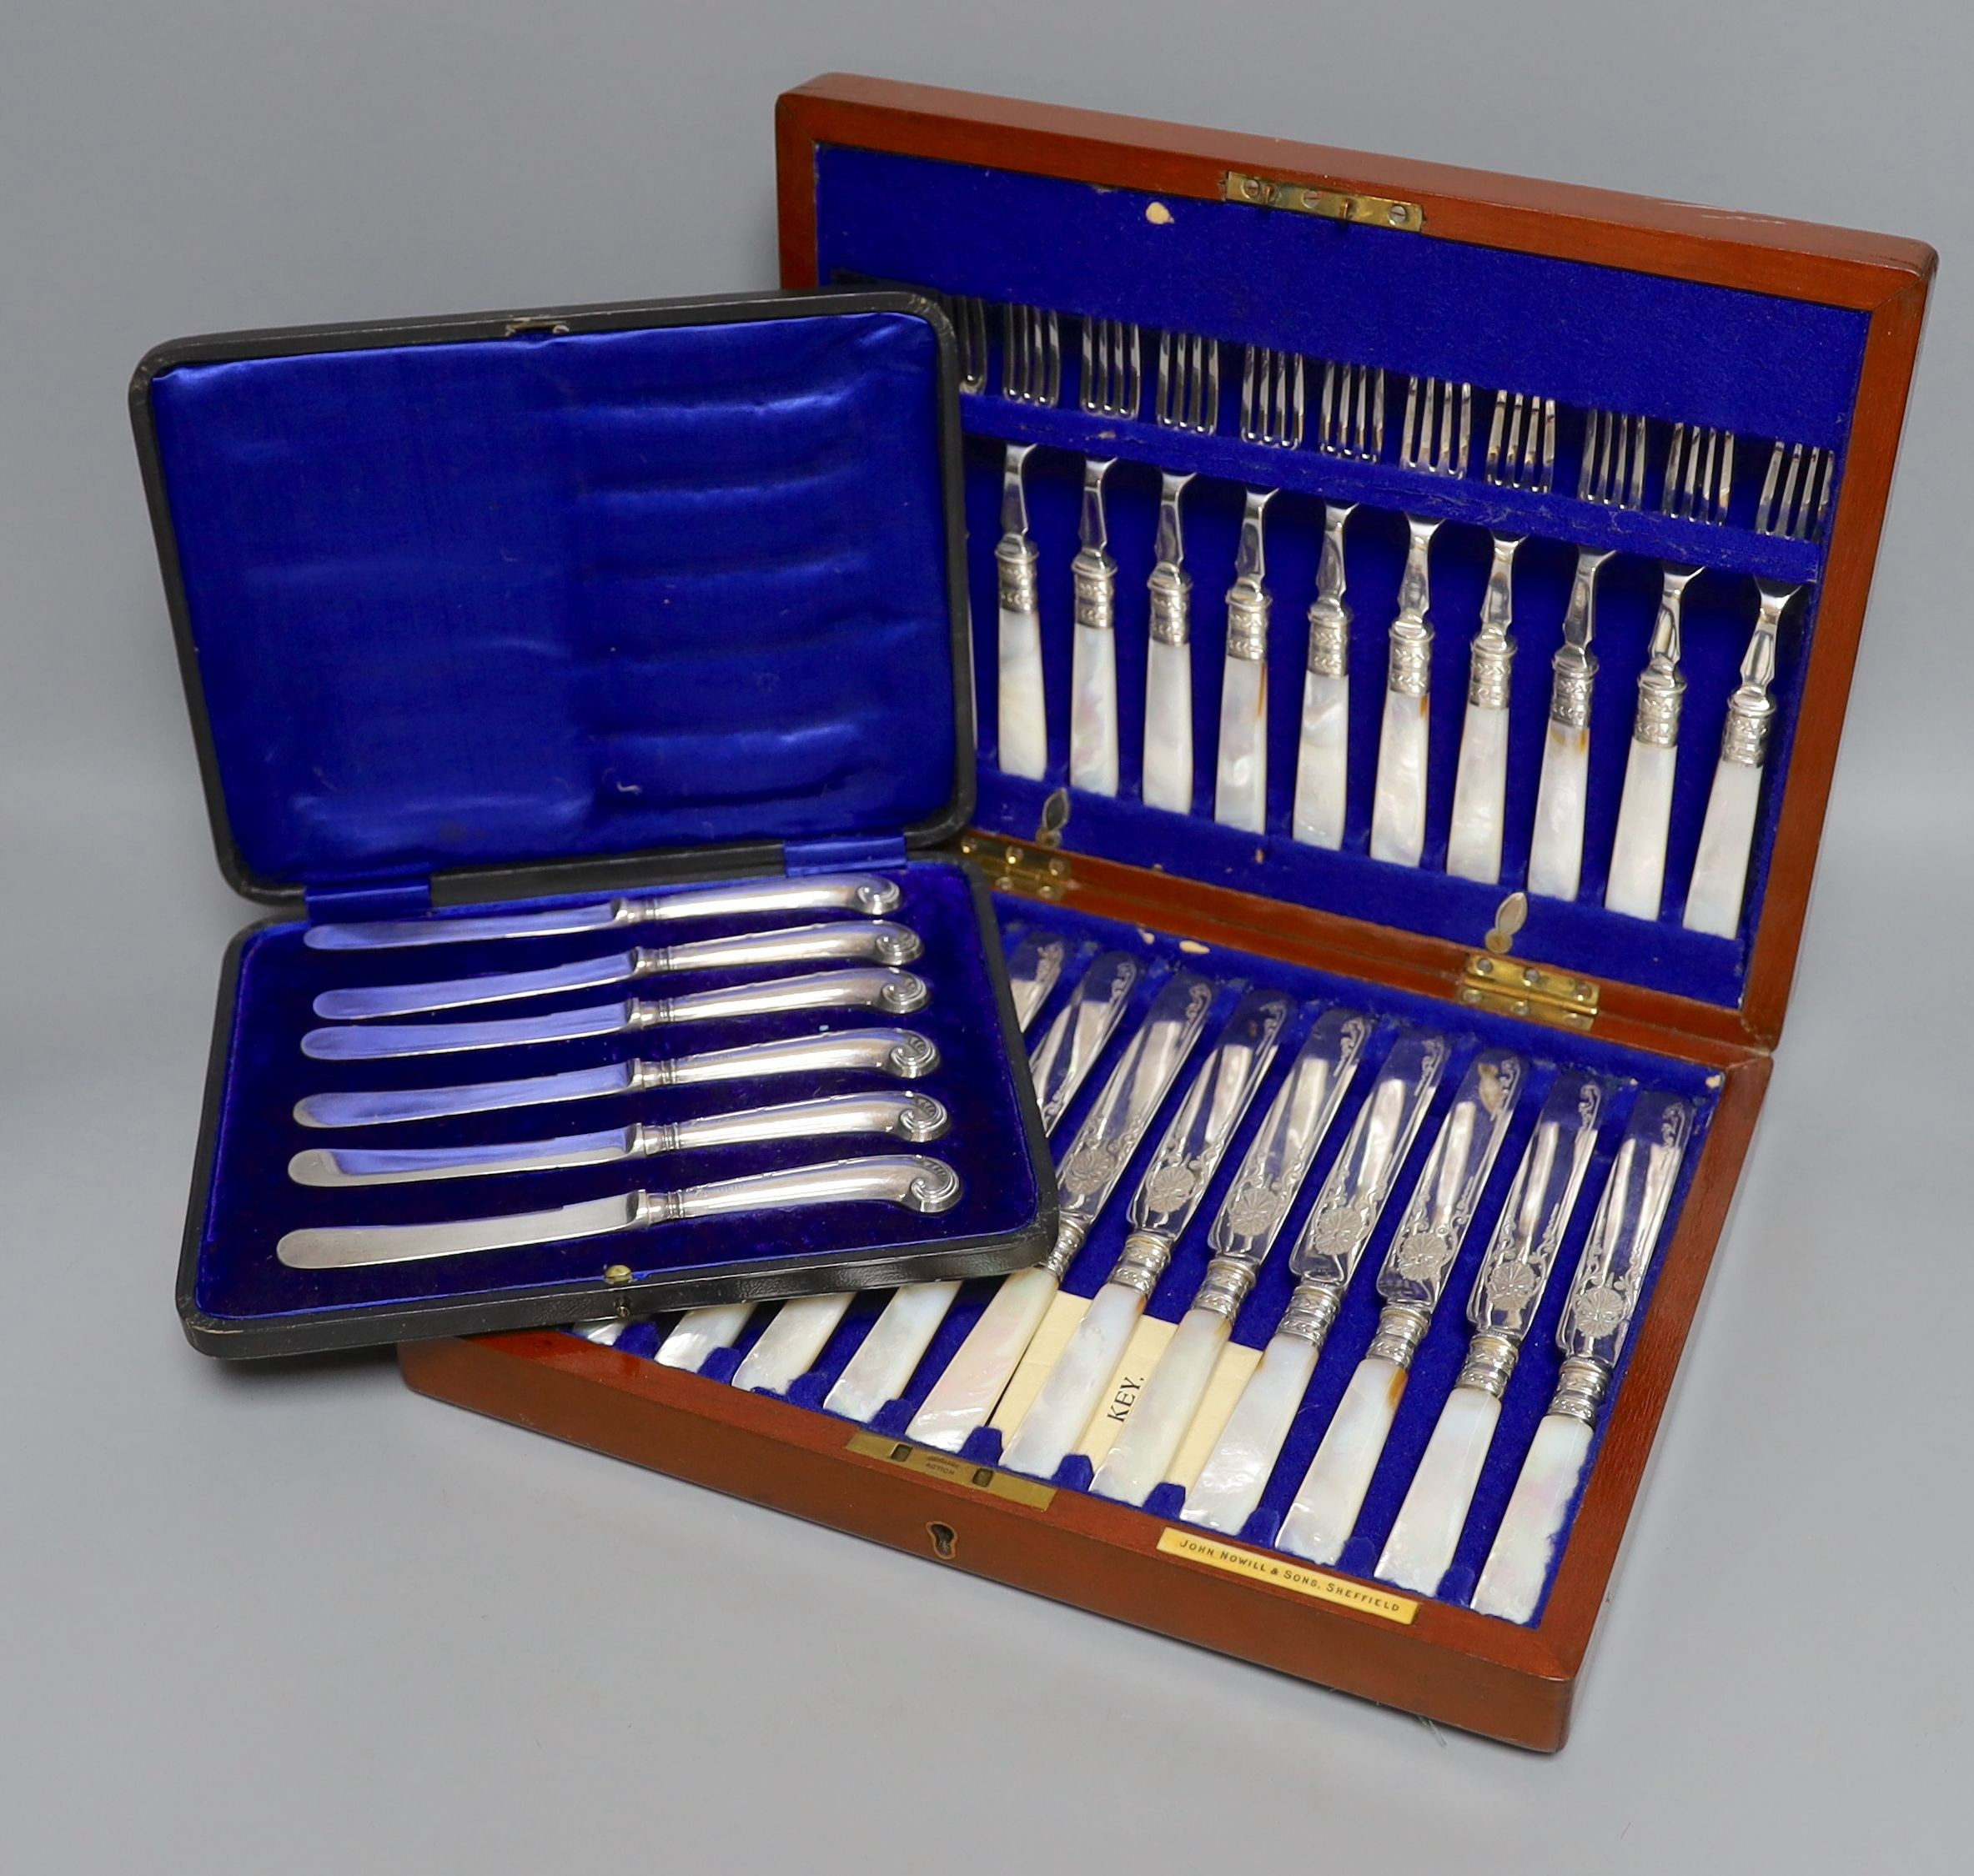 A cased set of silver handled pistol knives and a cased set of mother-of-pearl fruit knives and forks